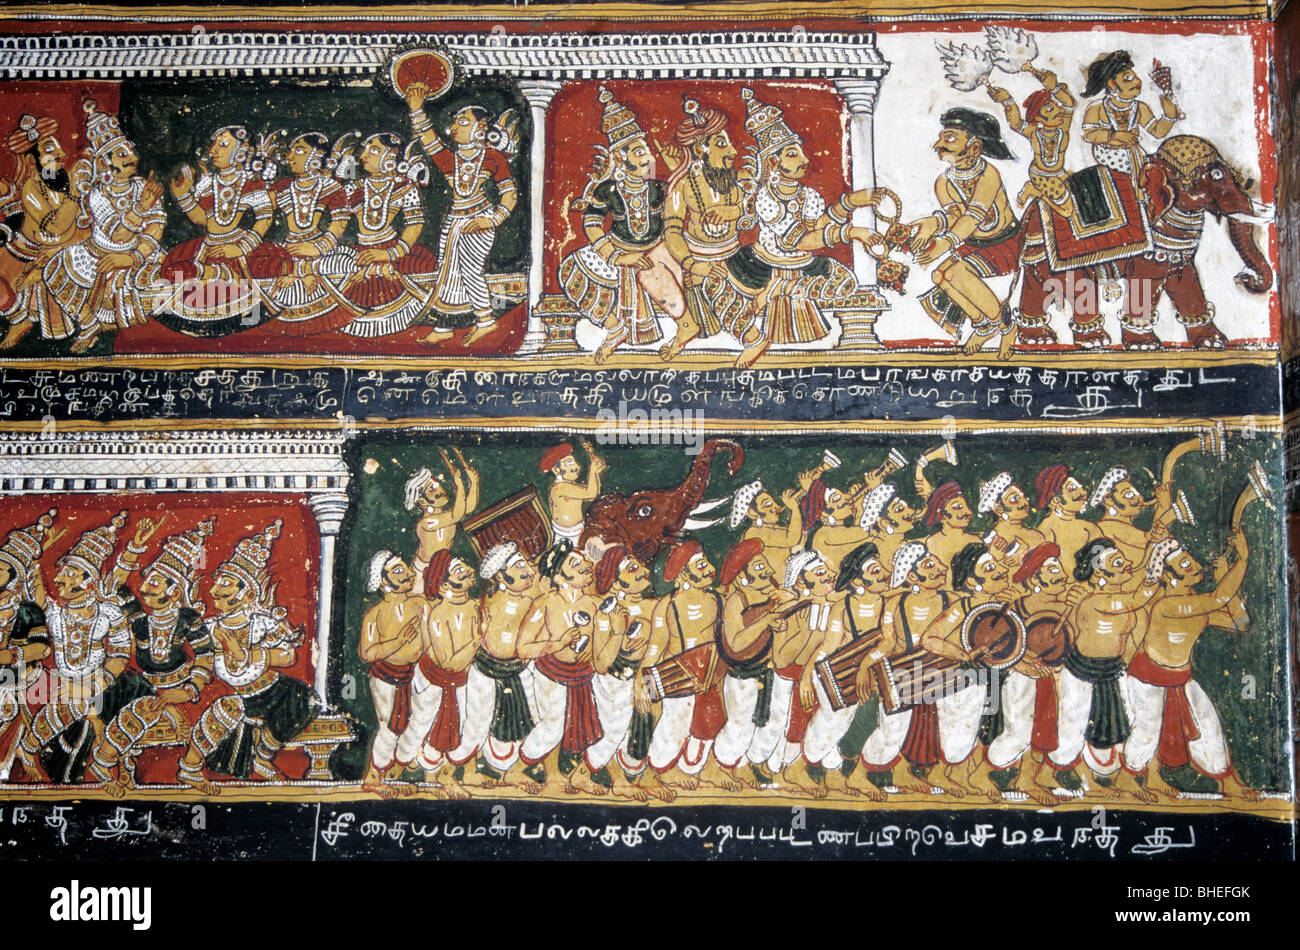 Zwei hundert Jahre das alte Ramayana Wandmalereien an den Wänden im Bodinayakanur Palast in der Nähe von Madurai, Tamil Nadu. Stockfoto